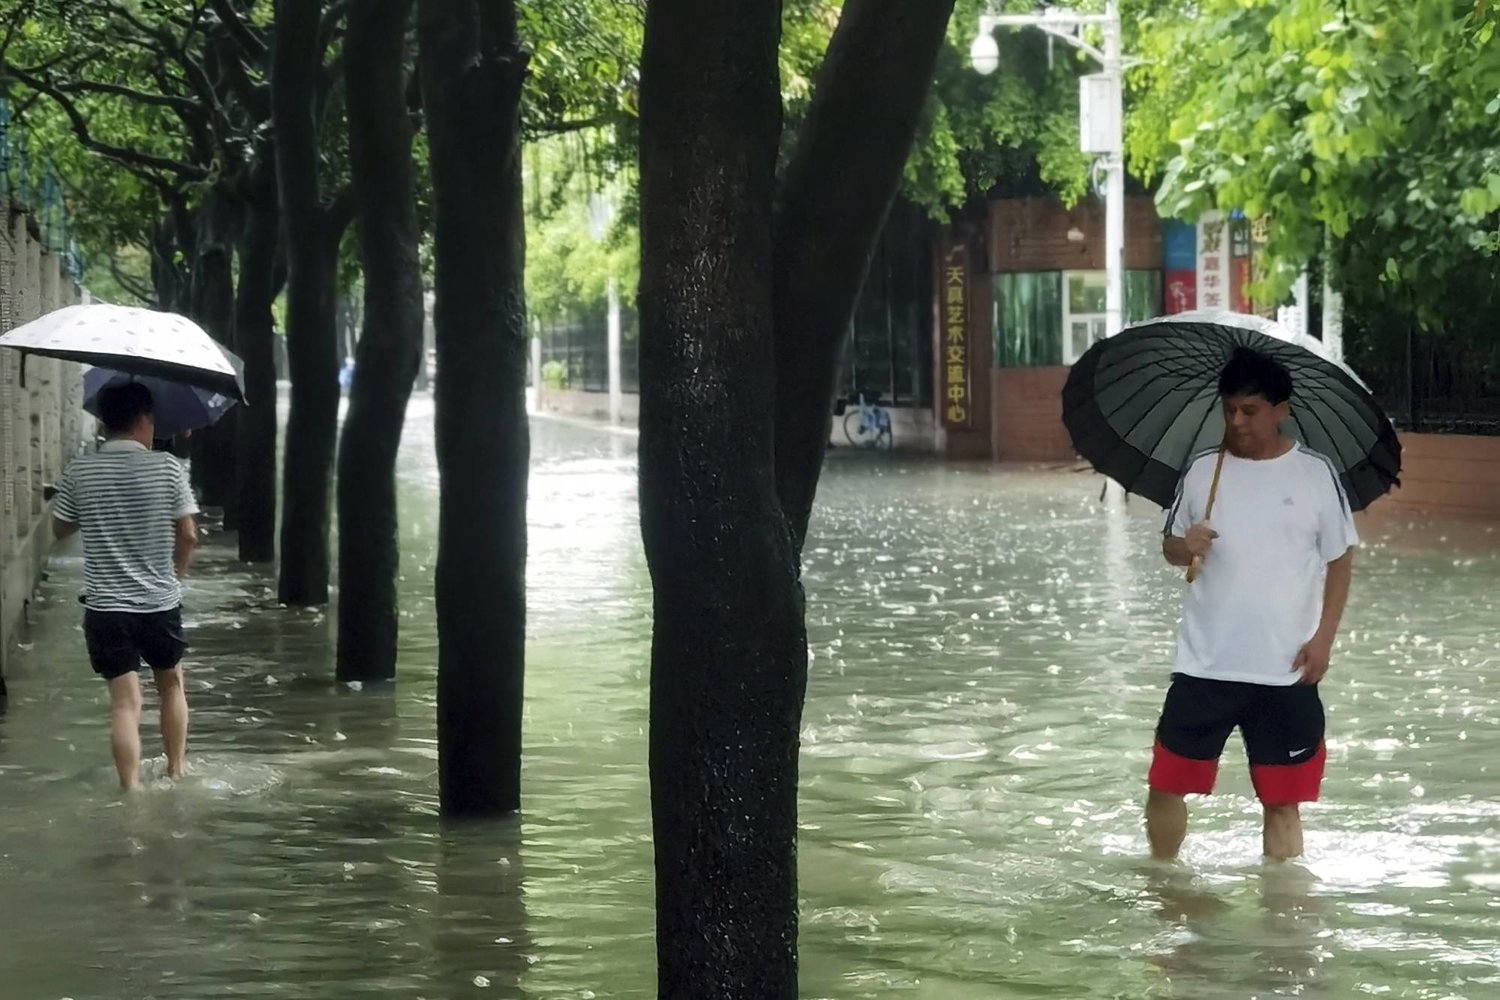 الإعصار “دوكسوري” يعلق وسائل النقل في مقاطعة فوجيان الصينية